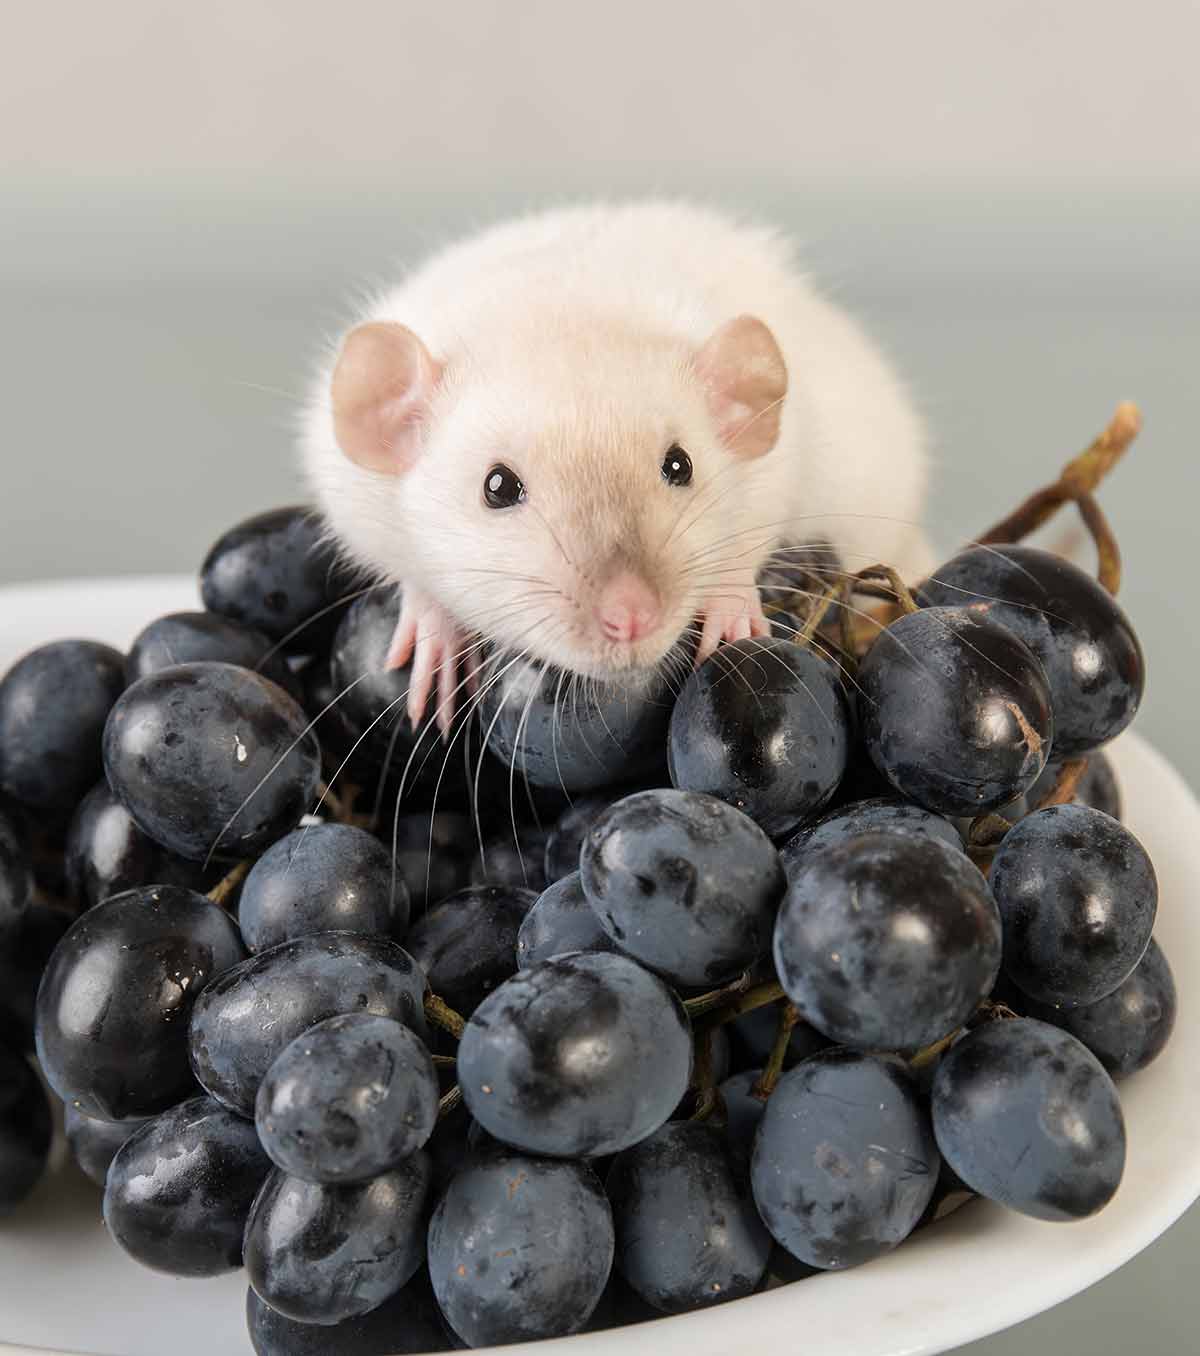 can rats eat grapes